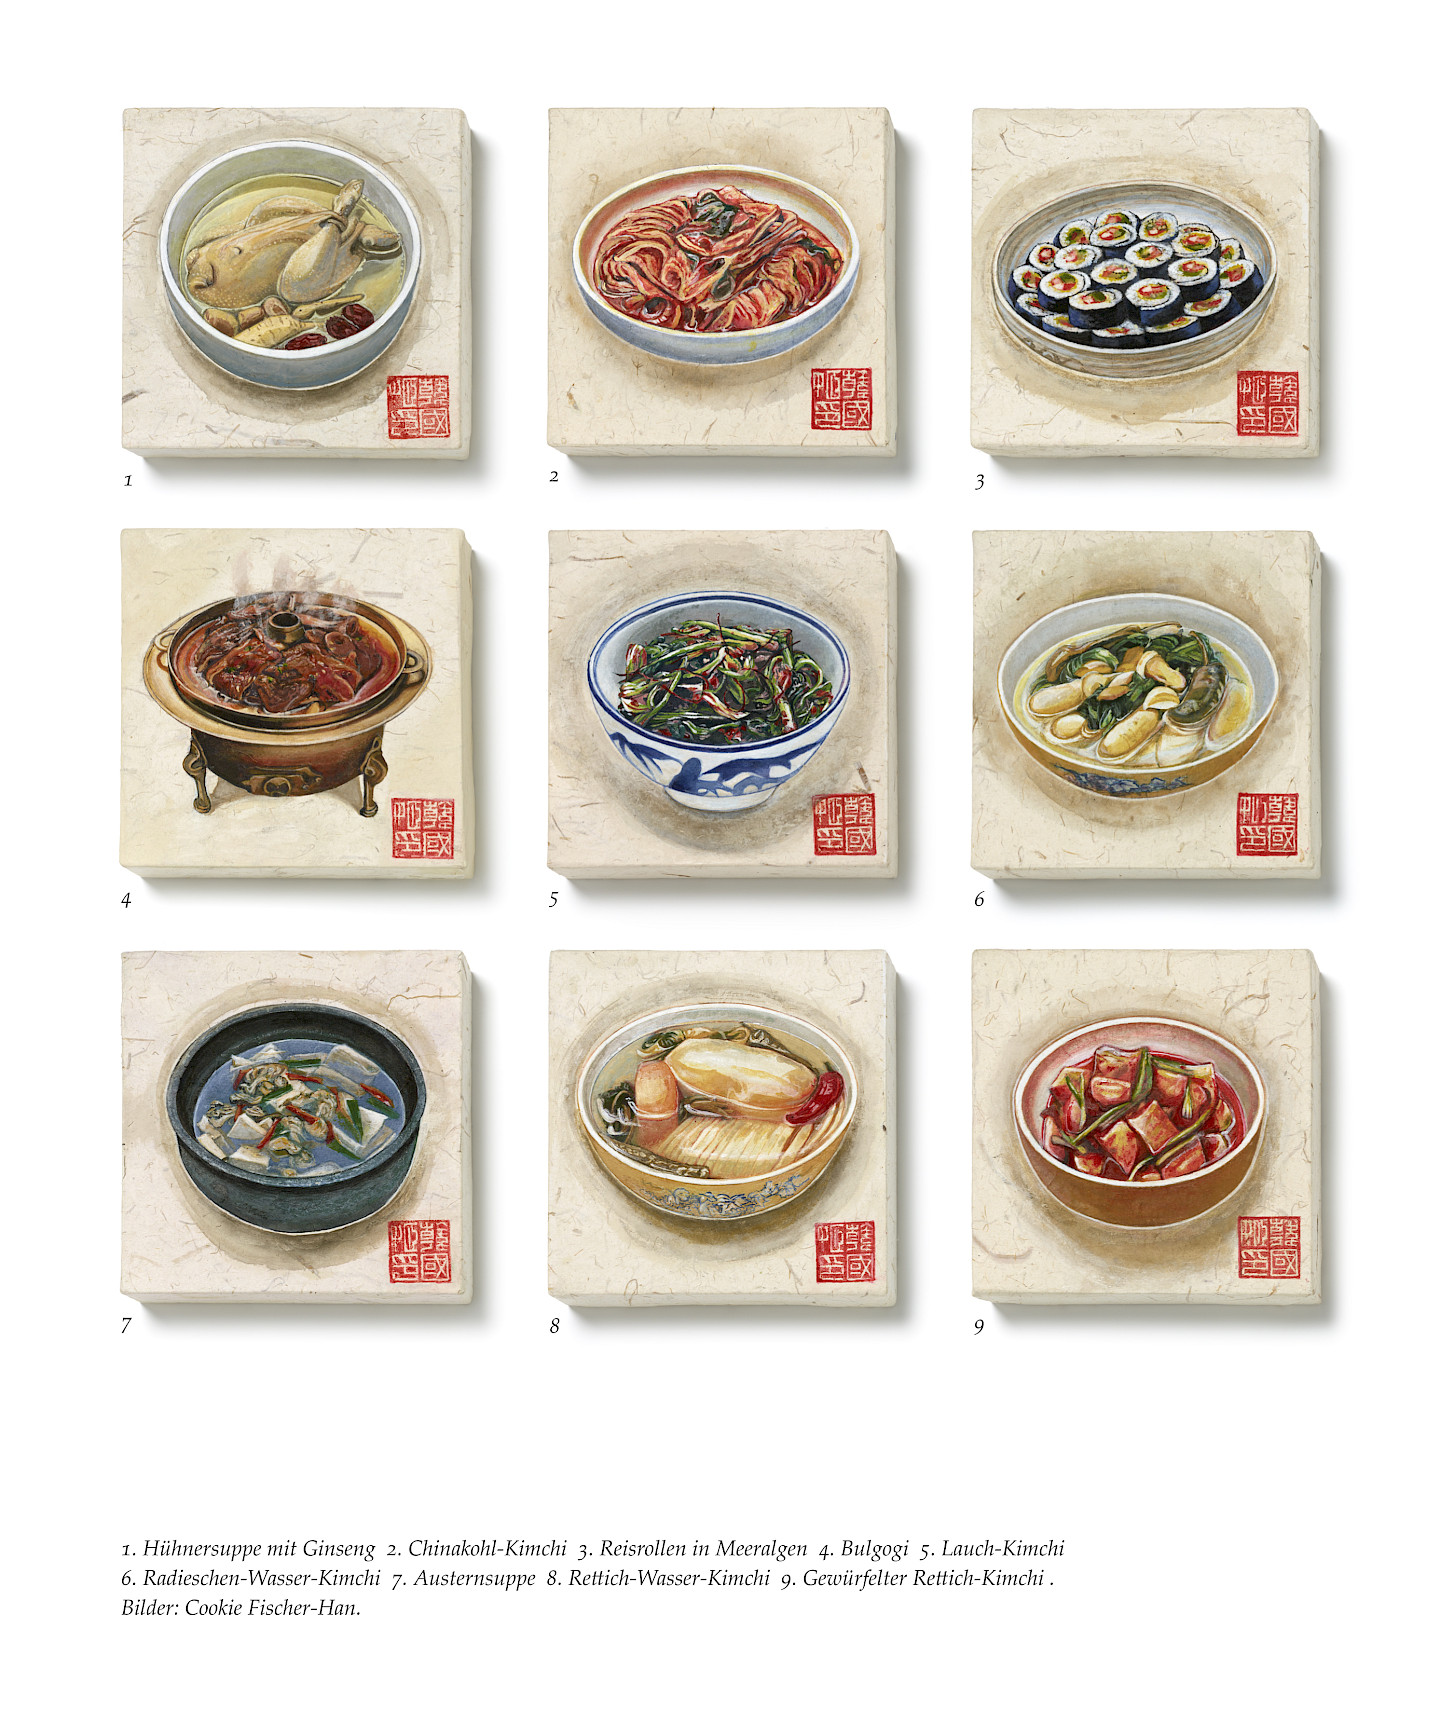 S(e)oul food. Koreanisch-kulinarische Erinnerungen mit Bildern von Cookie Fischer-Han